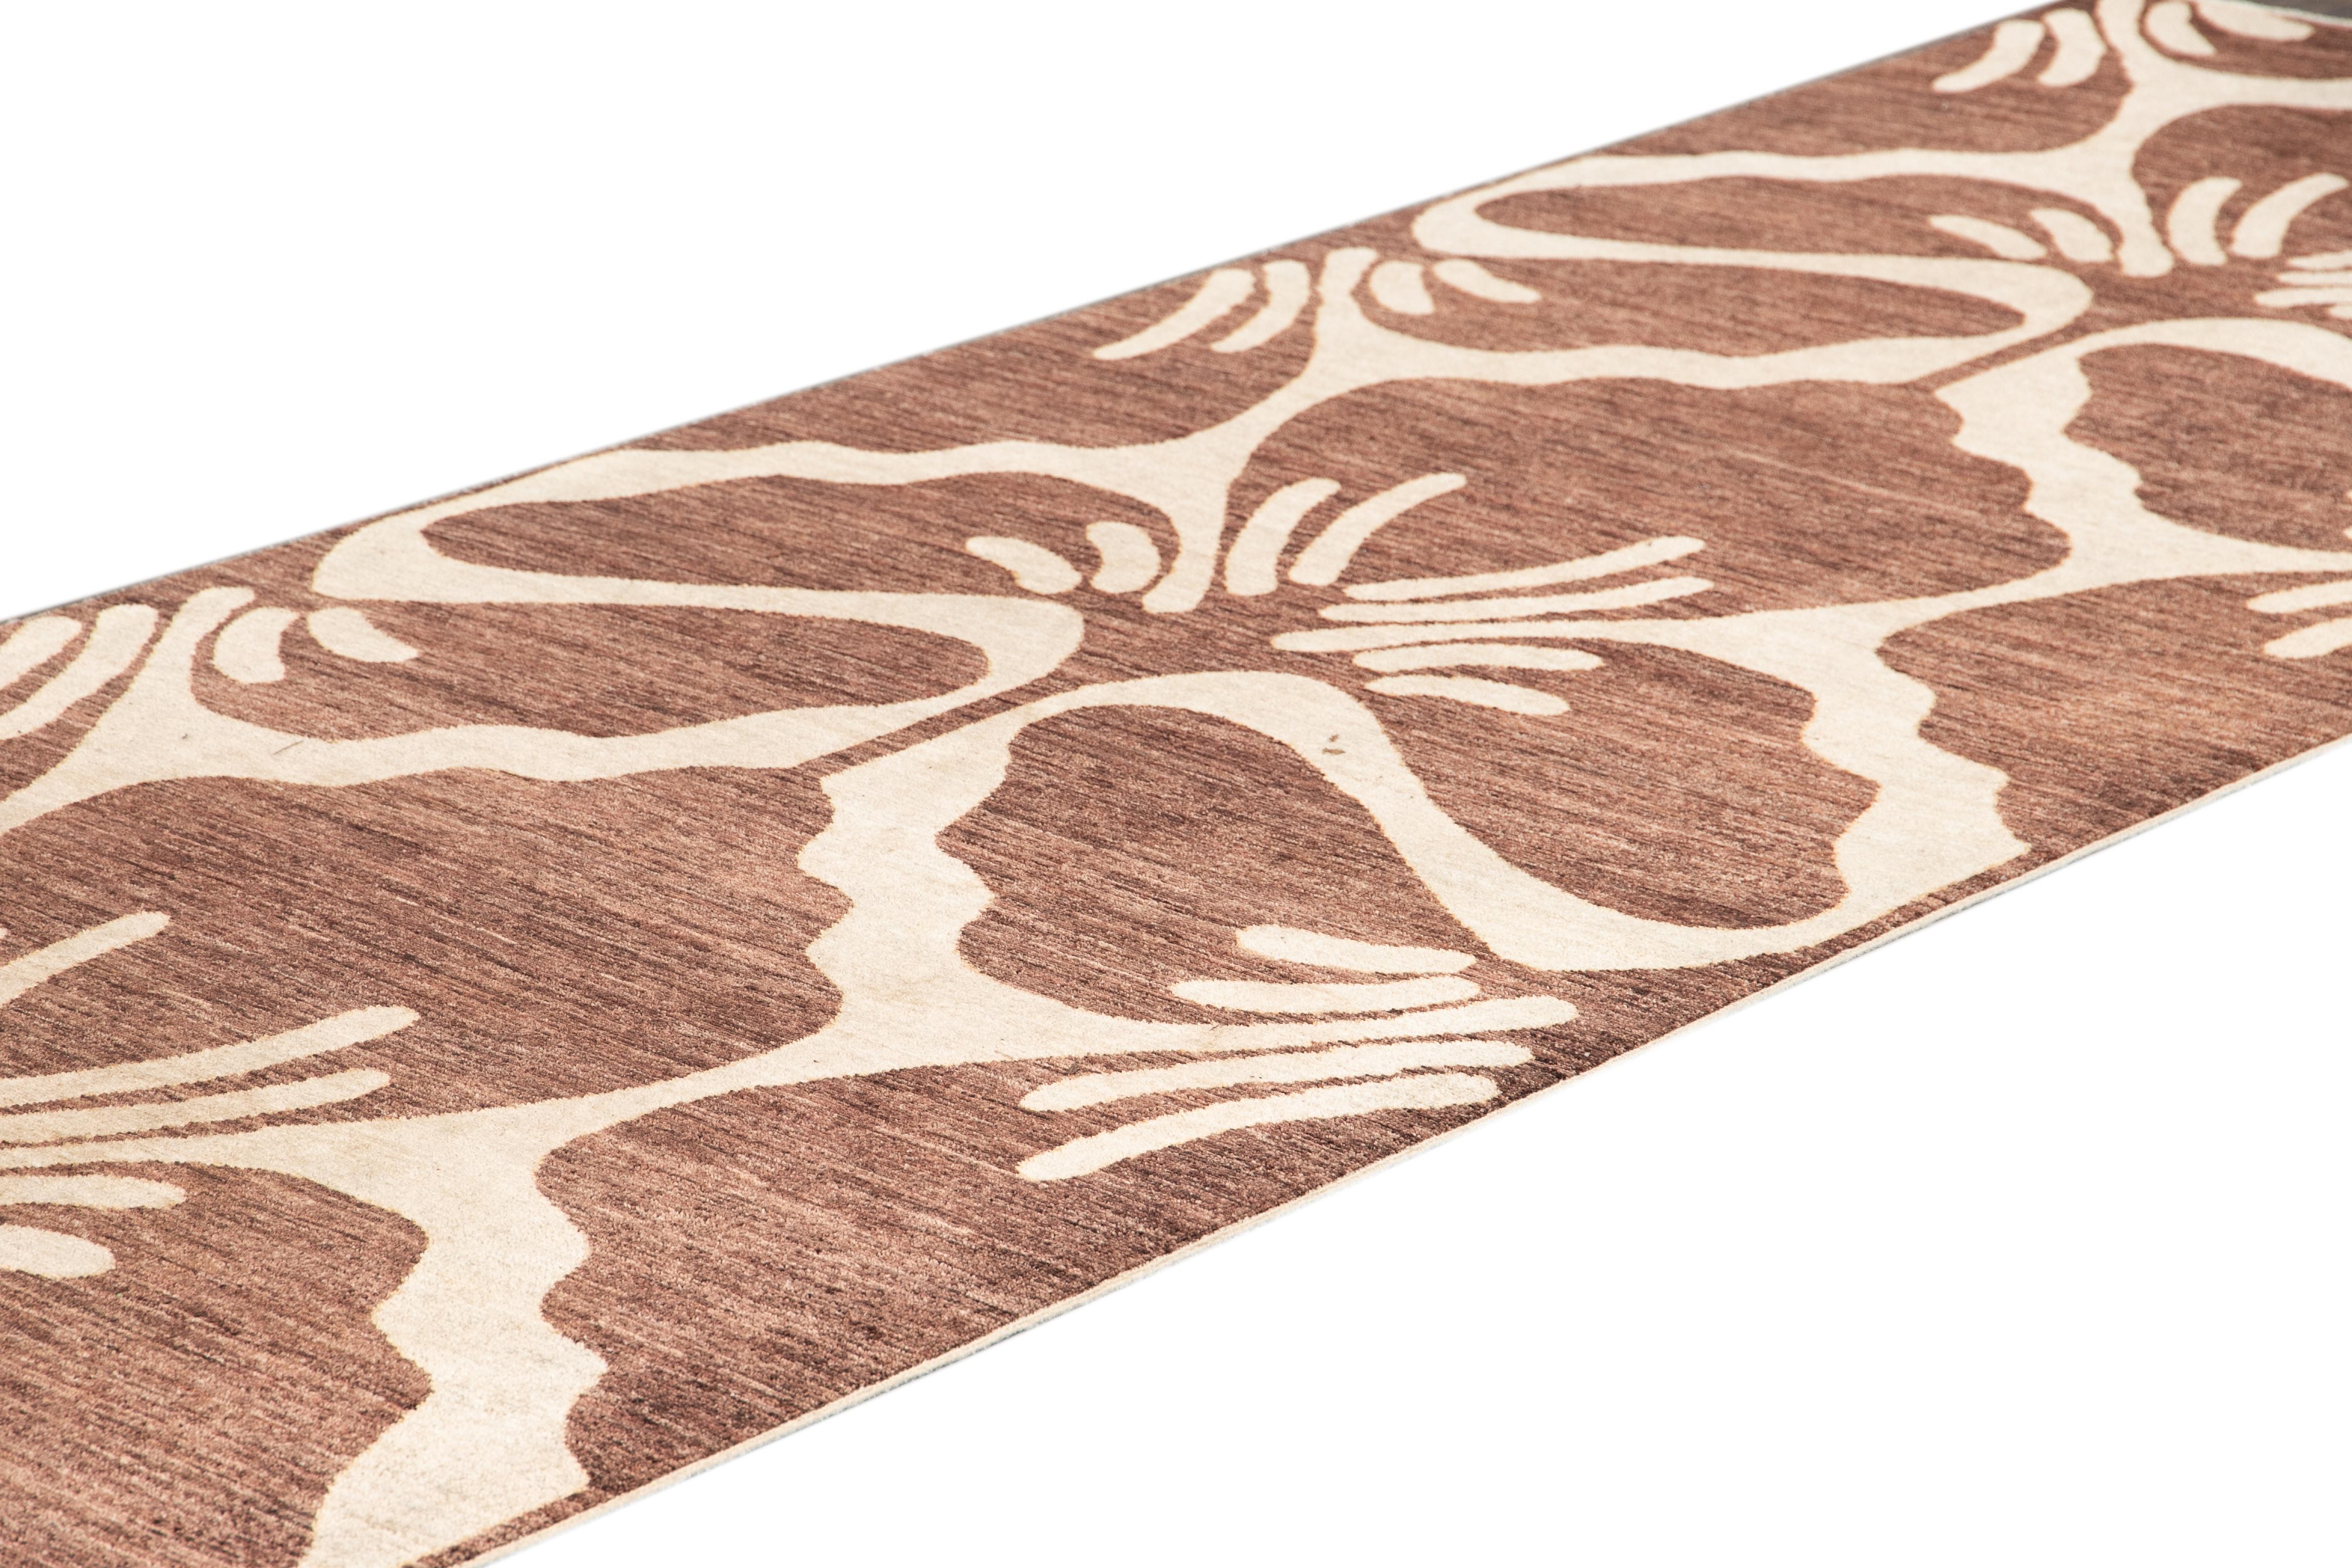 Schöner indischer Teppich im Stil der Jahrhundertmitte, handgeknüpft aus Wolle mit grünem Feld und braunen Akzenten in floralem Allover-Design.
Dieser Teppich misst 4' 3